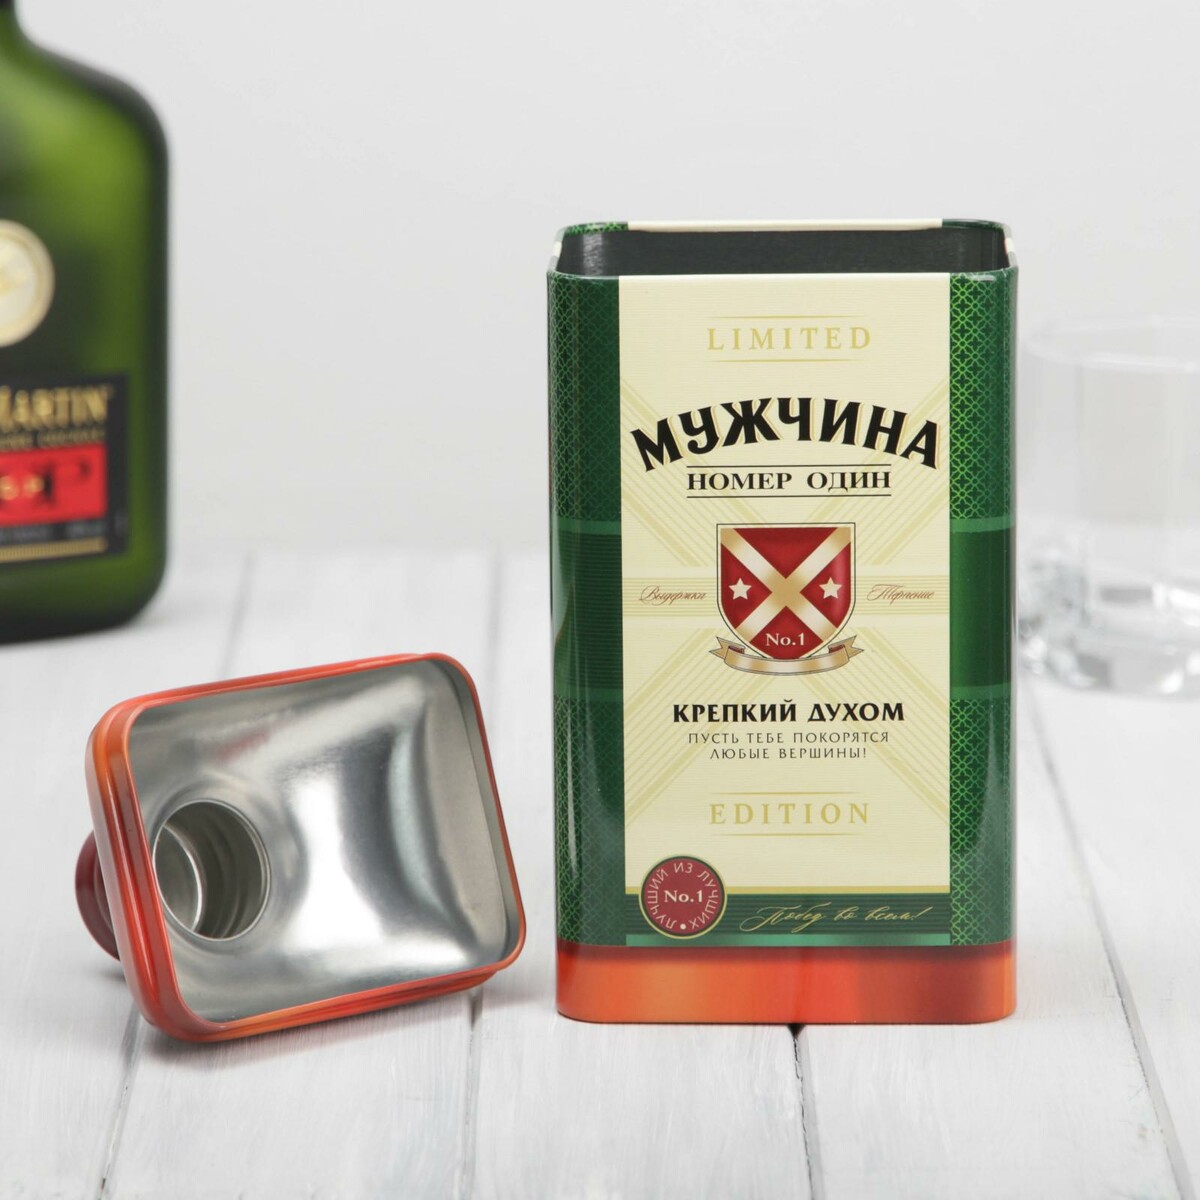 Коробка жестяная в форме бутылки. Алкоголь в жестяной упаковке. Подарок с мини алкоголем мужчине.